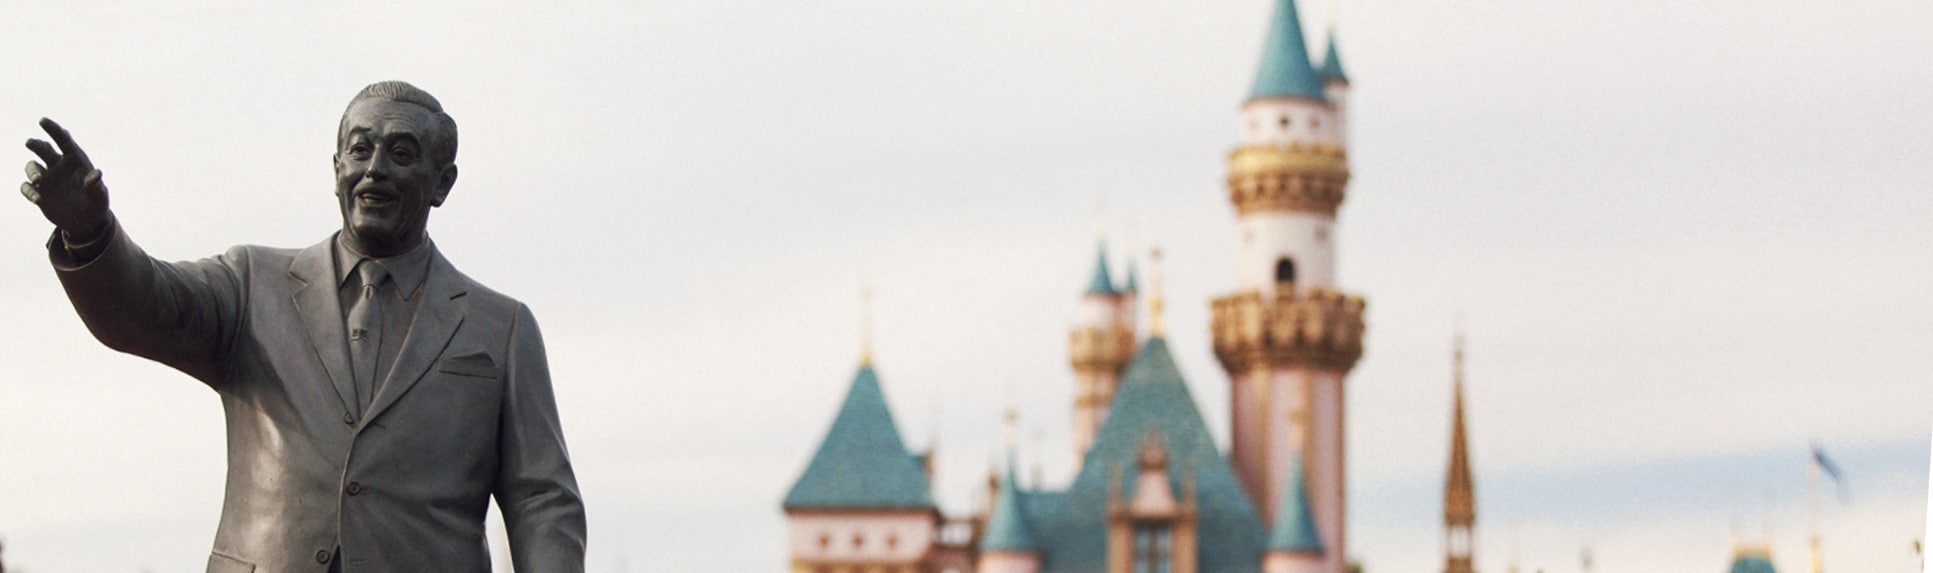 Statue of Walt Disney in front of Sleeping Beauty Castle